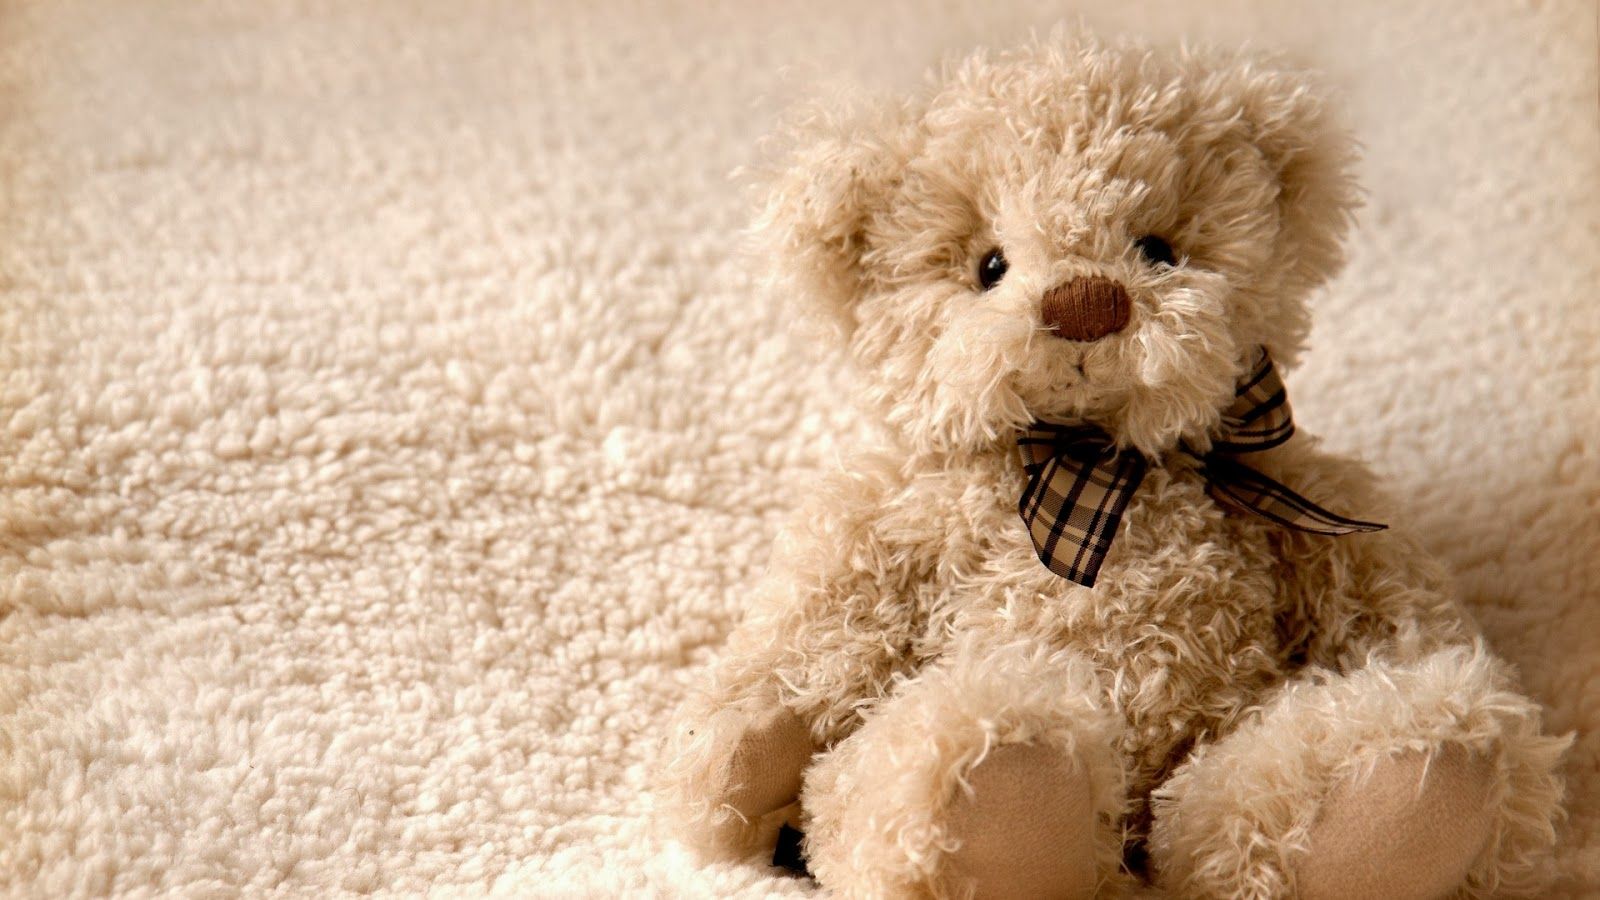 A teddy bear sitting on a white fluffy carpet - Teddy bear